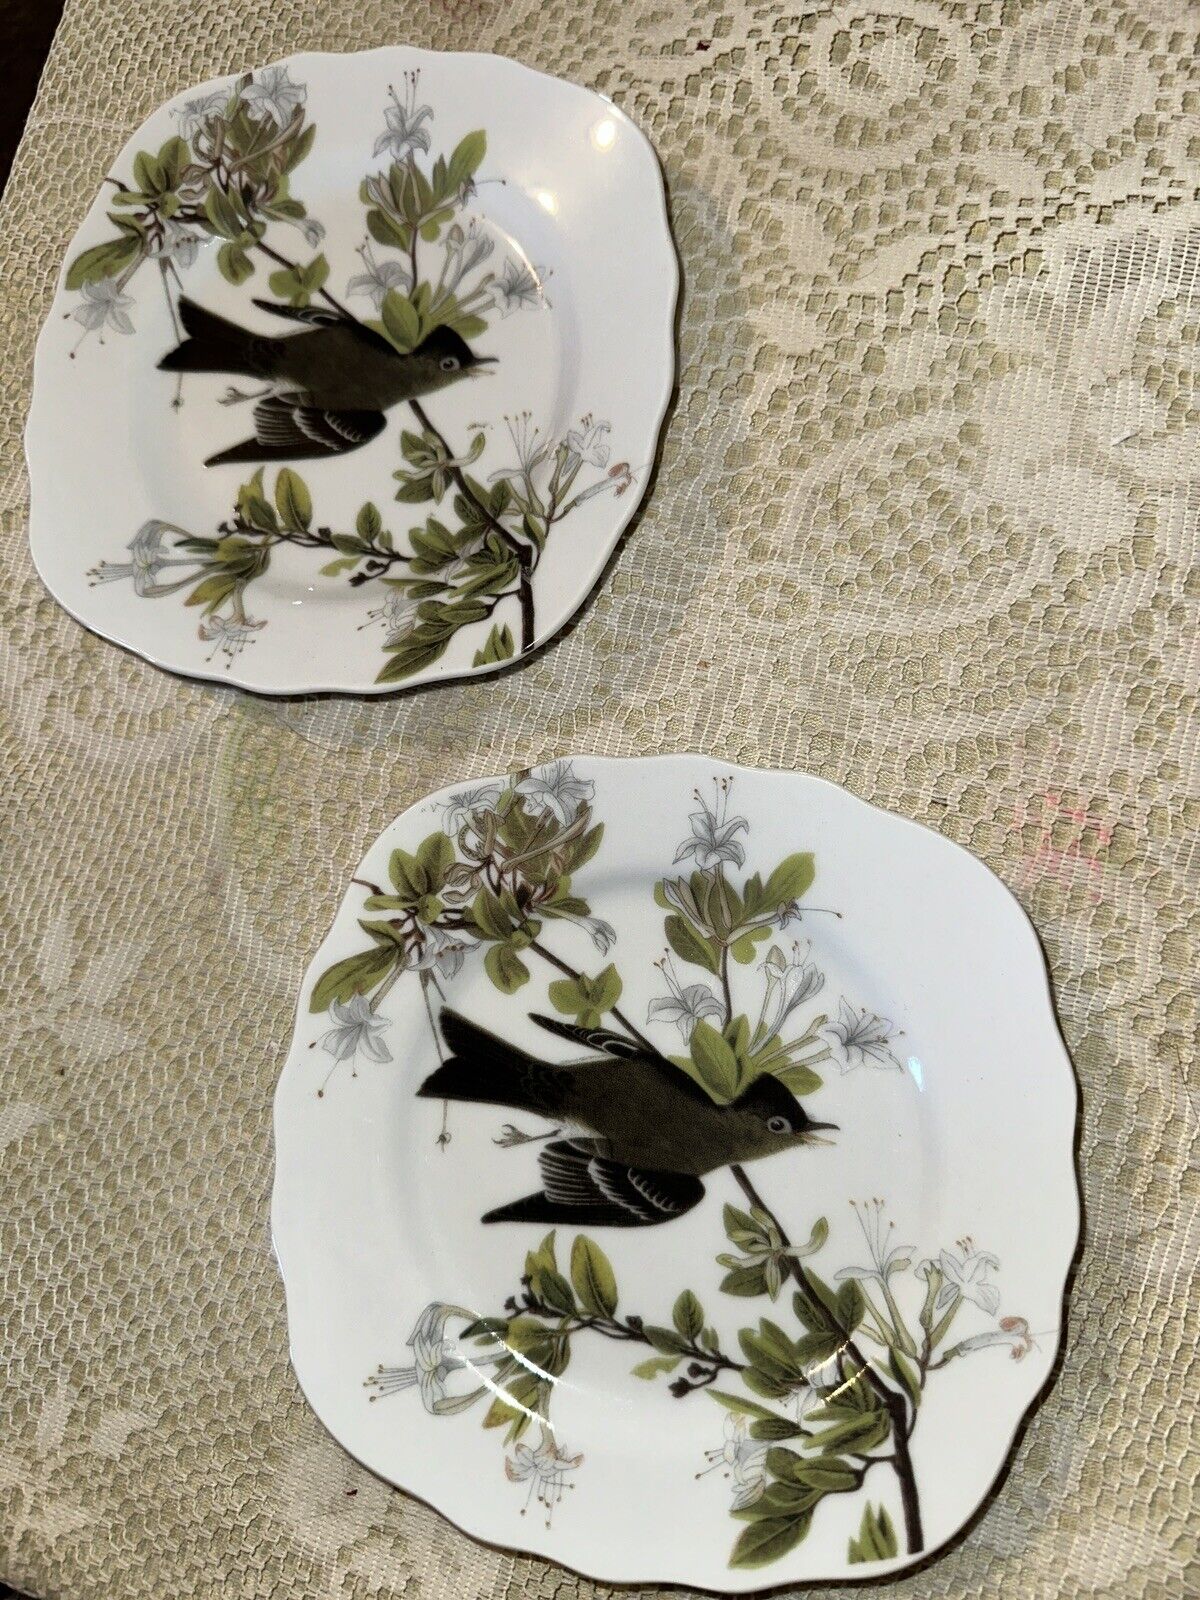 2 National Audubon Society Bird Plates 6” Eastern Wood Pewee Godinger 2010